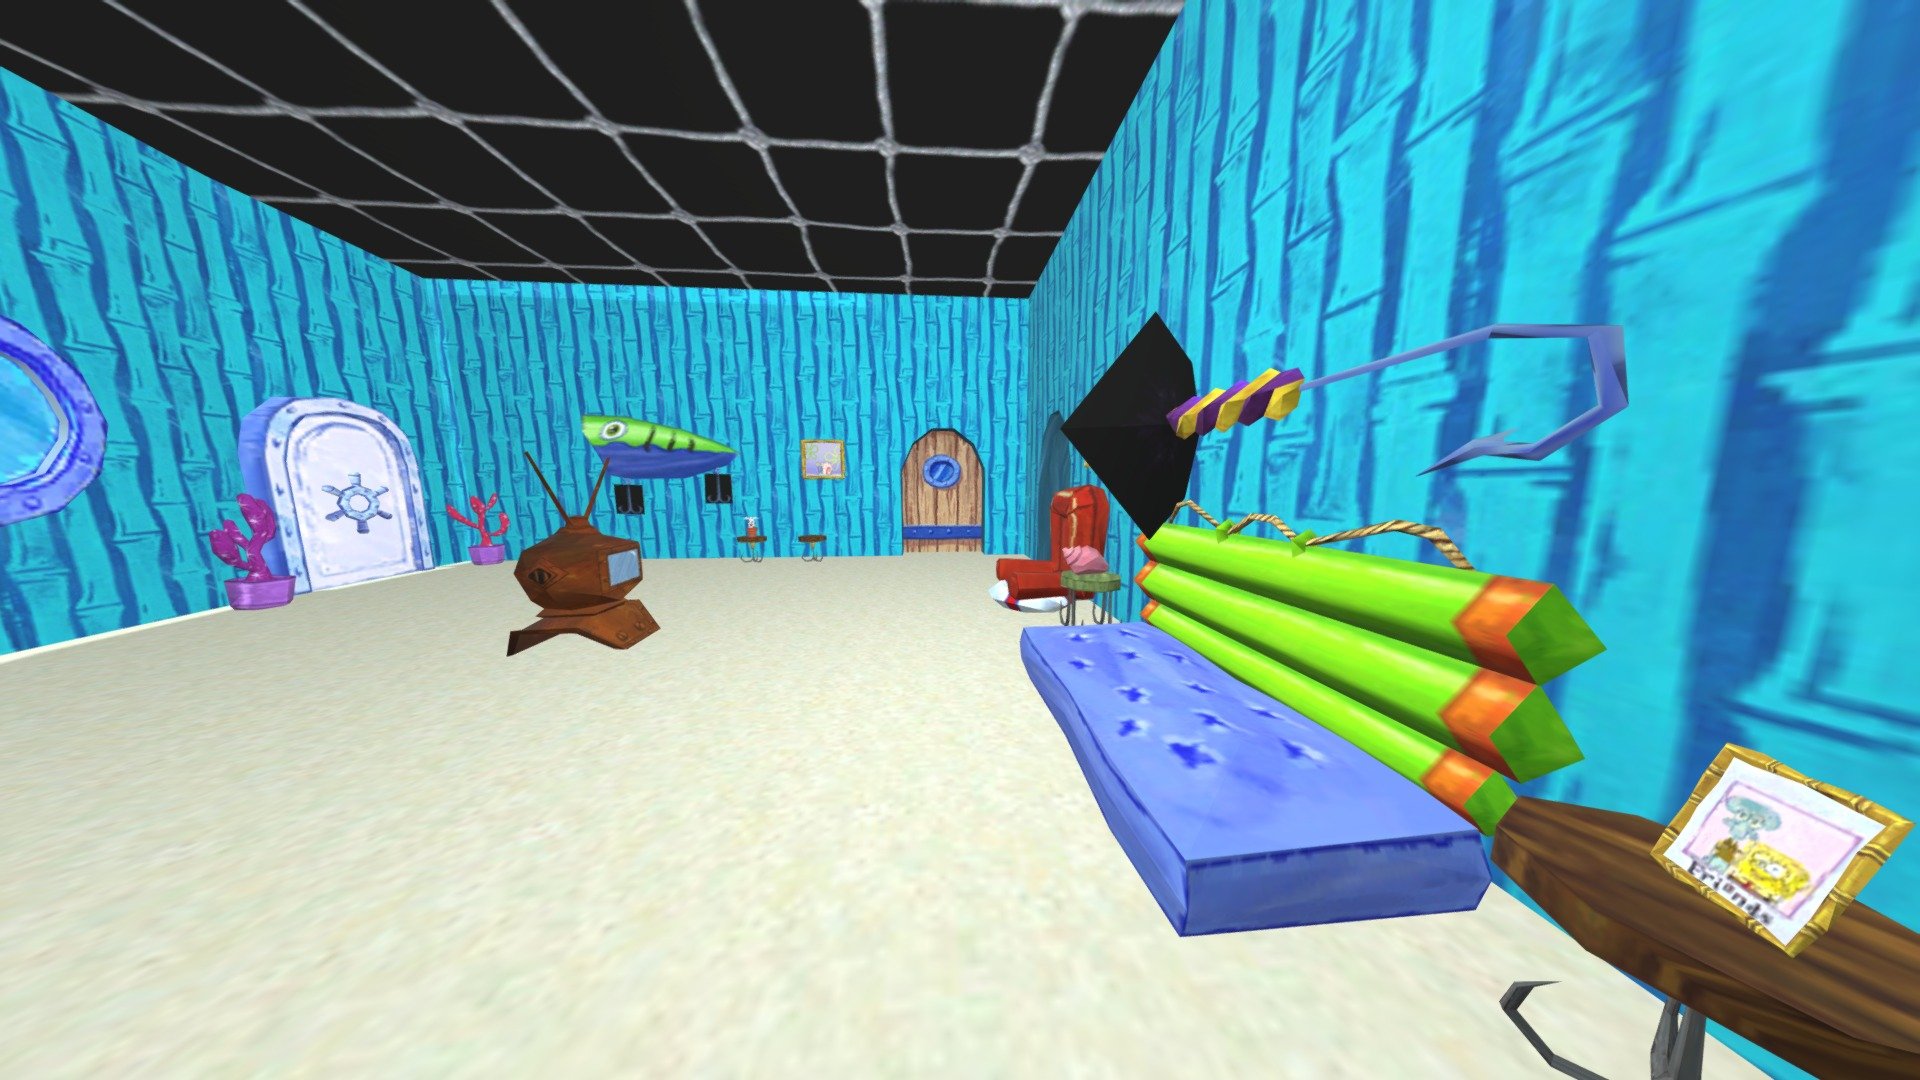 spongebob battle for bkini bottom - Spongebob's House bfbb gamecube - Download Free 3D model by romyblox1234 3d model